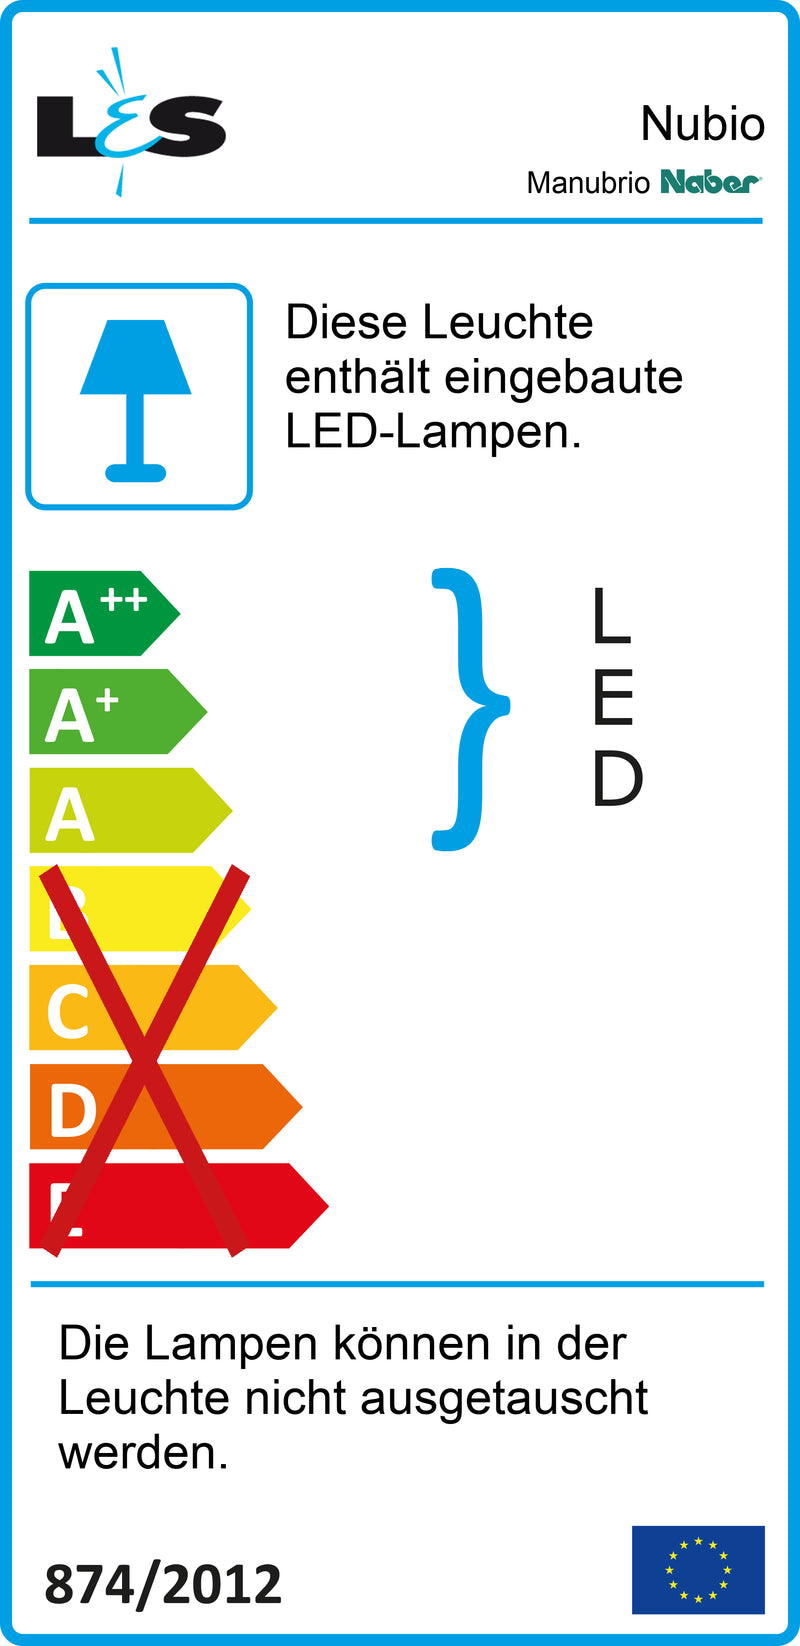 E-Label zu Manubrio LED Set 2 als Variante für Inselgröße bis max. 250 x 135 cm von Naber GmbH in der Kategorie Lichttechnik in Österreich auf conceptshop.at